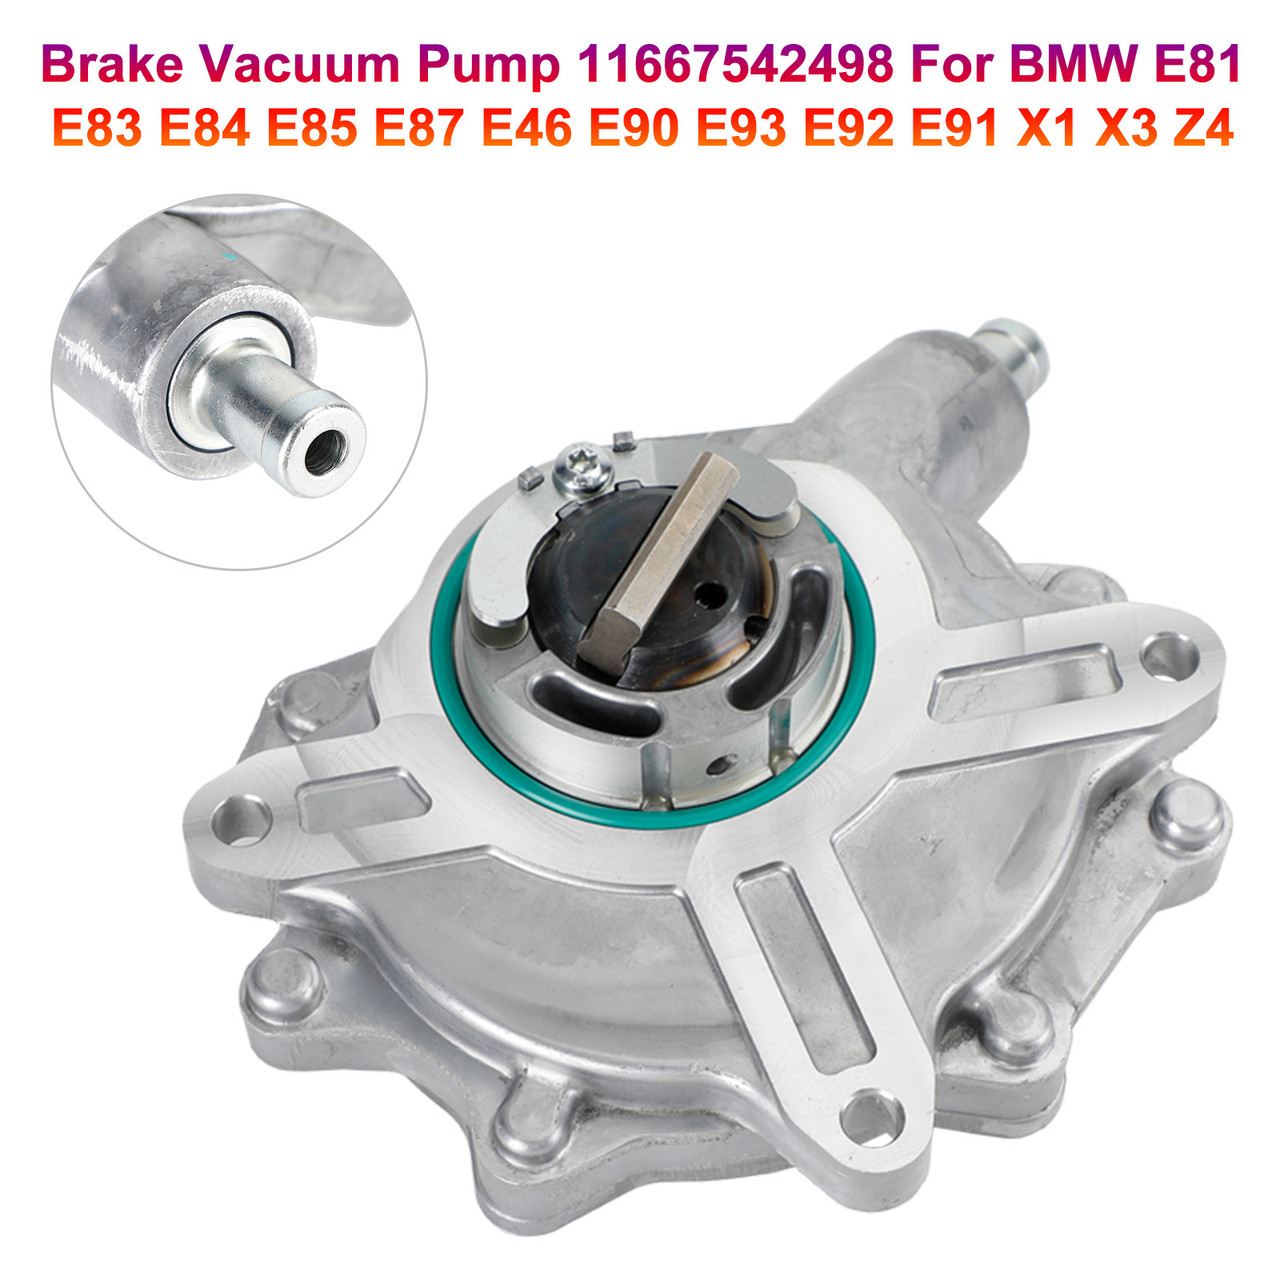 Brake Vacuum Pump 11667542498 For BMW E81 E83 E84 E85 E87 E46 E90 E93 E92 E91 X1 X3 Z4